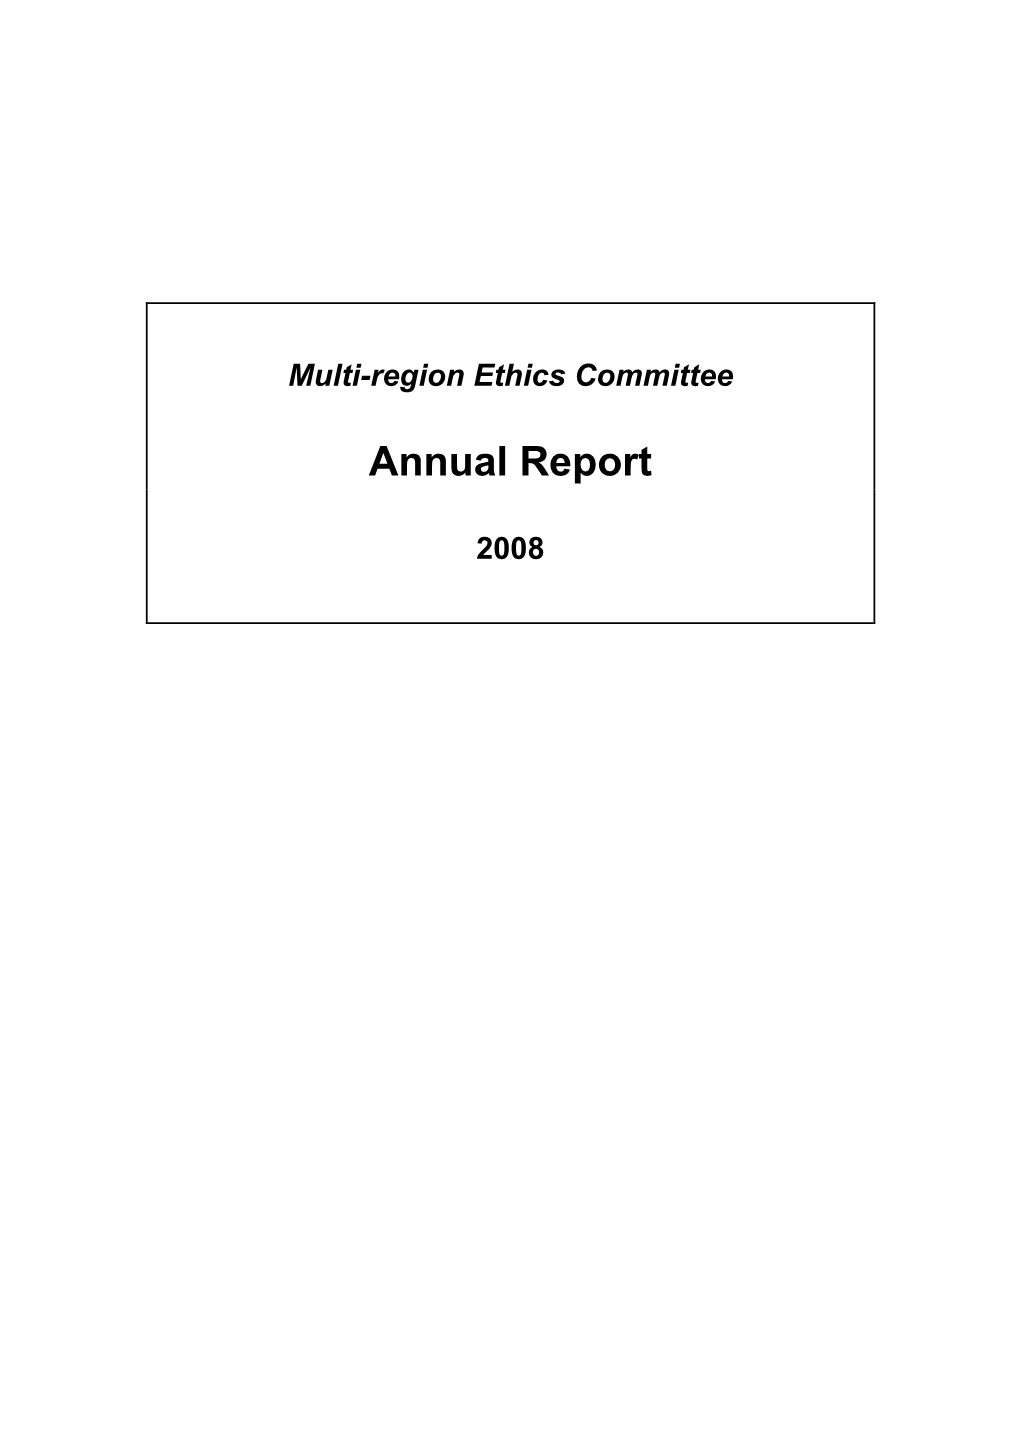 Multi-Region Ethics Committee Annual Report 2008.Pdf